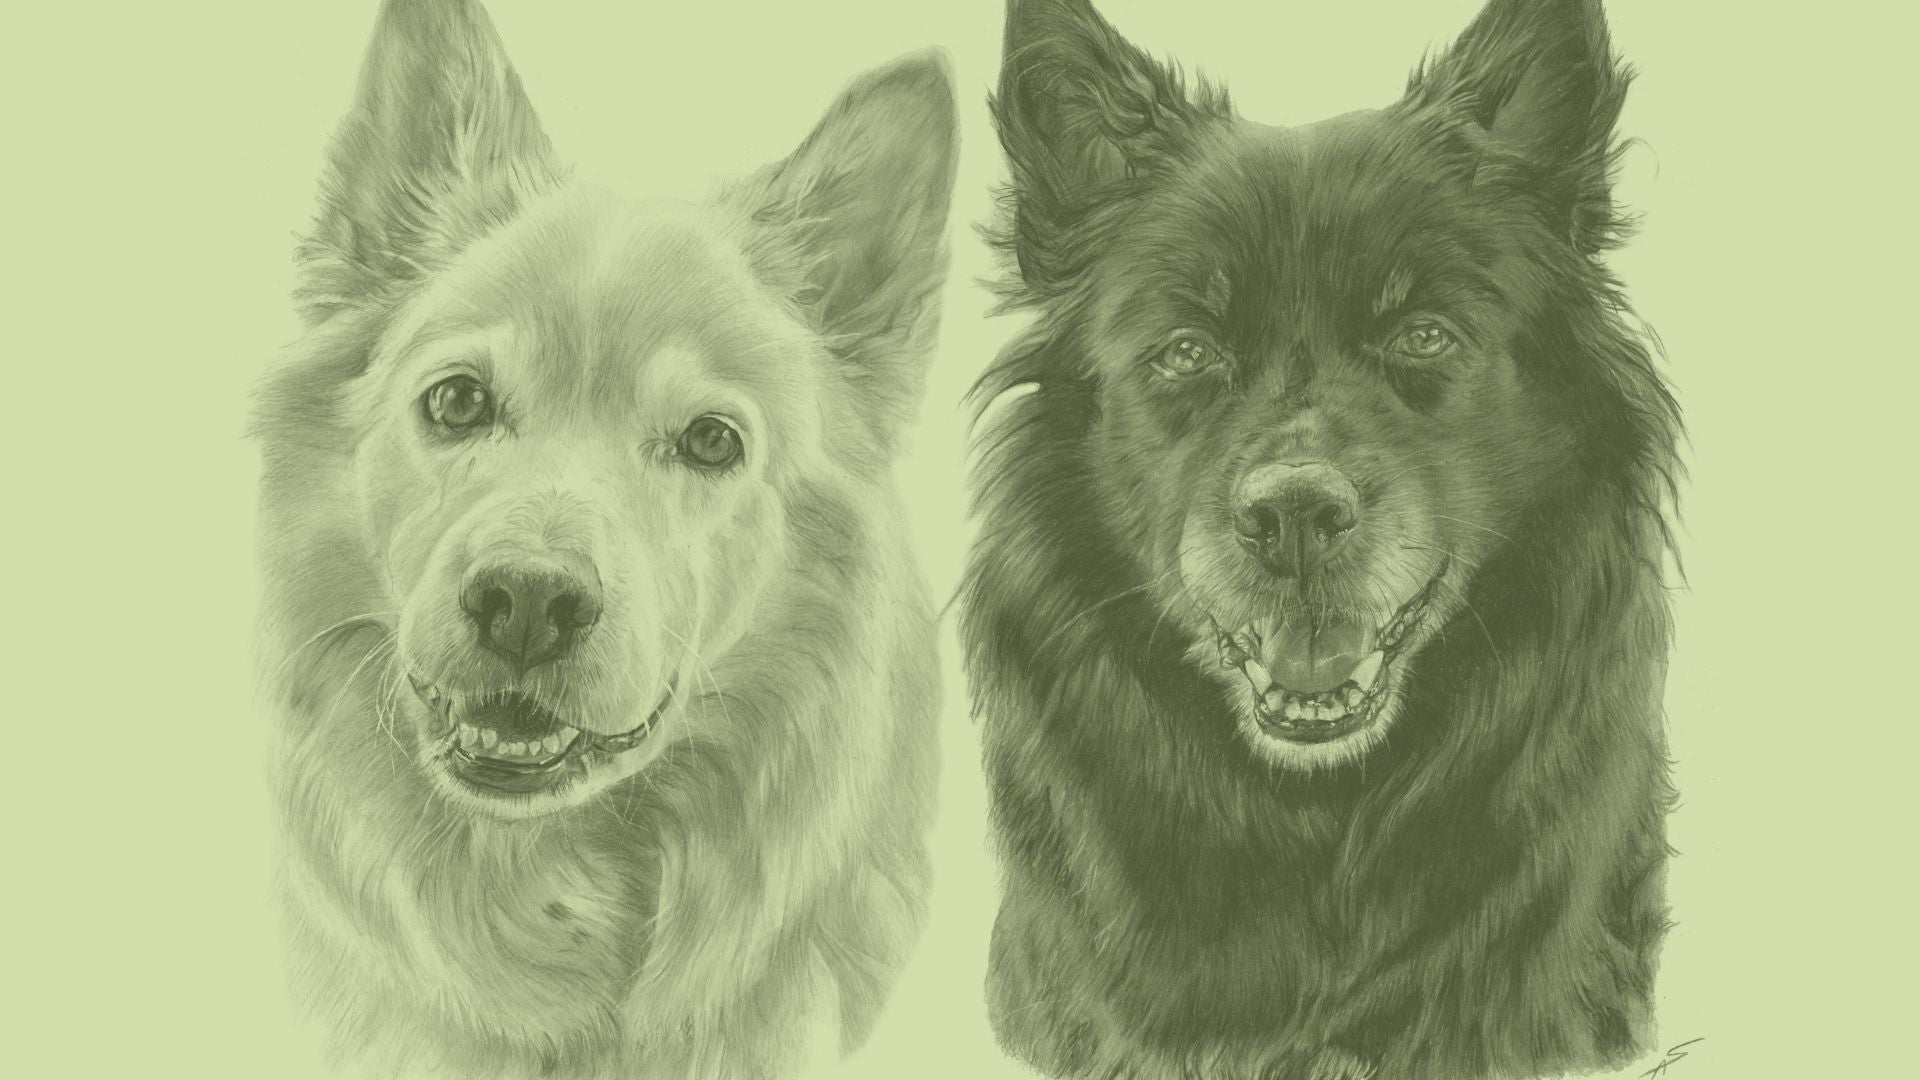 Buntstiftzeichnung im Hintergrund von zwei Hunden, der linke hell, der rechte dunkel. Grünlicher Schimmer liegt über dem Bild